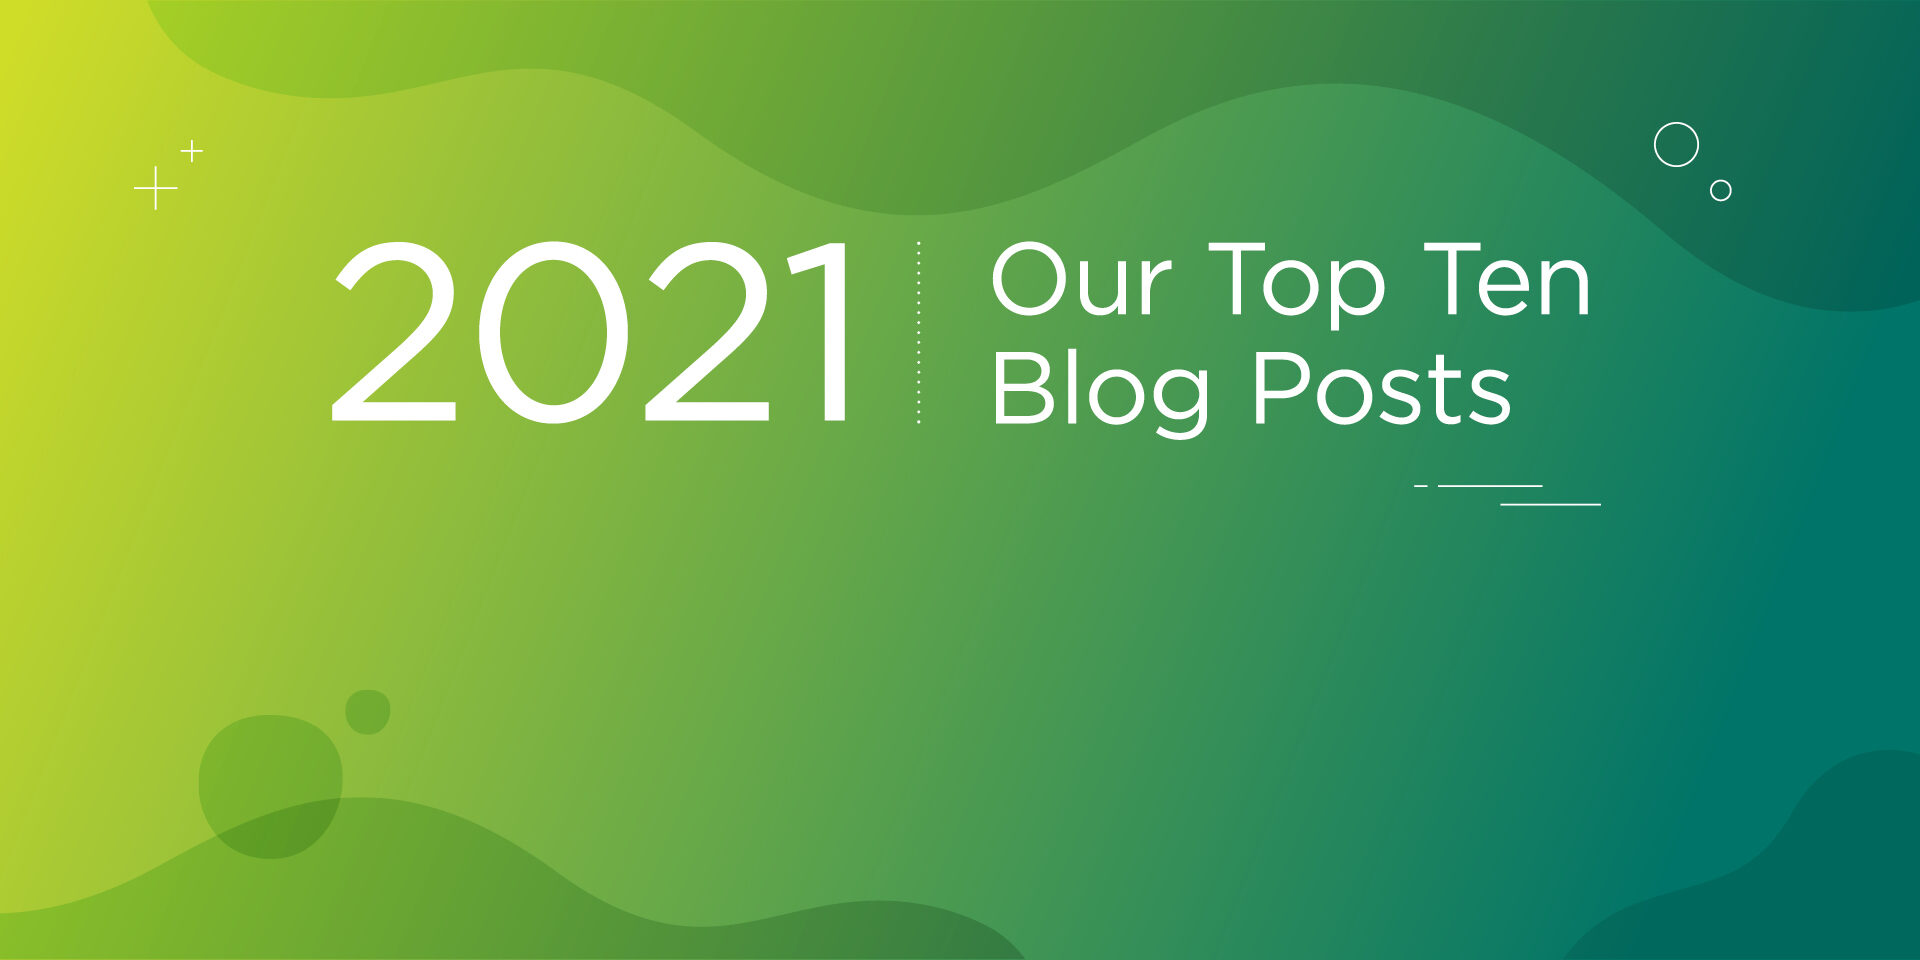 2021: Our Top Ten Blog Posts